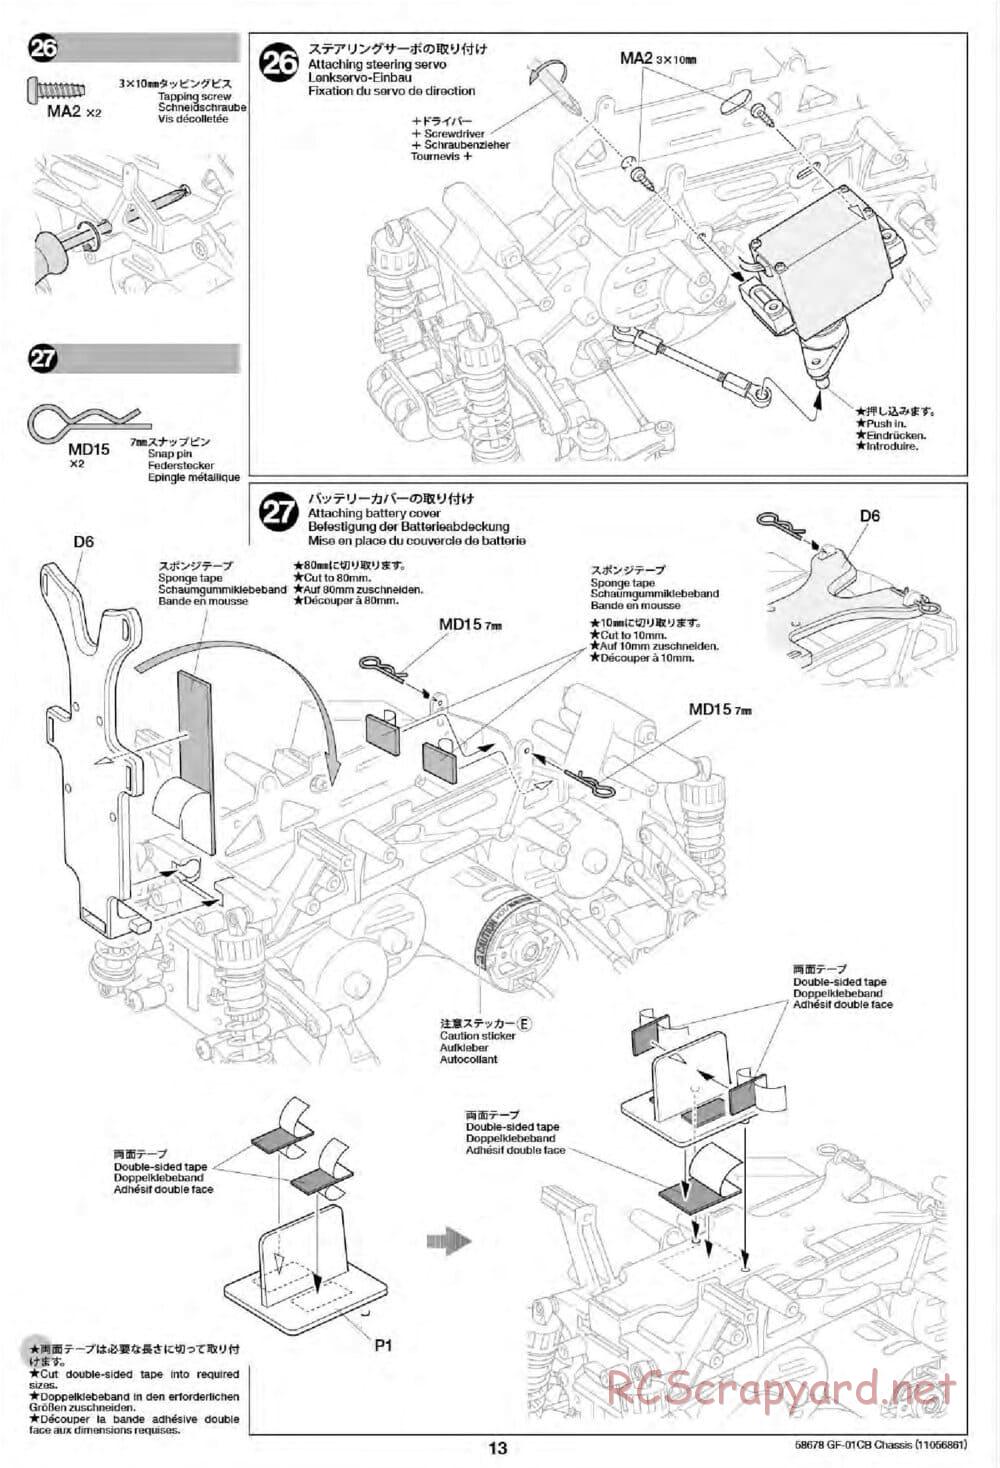 Tamiya - GF-01CB Chassis - Manual - Page 15